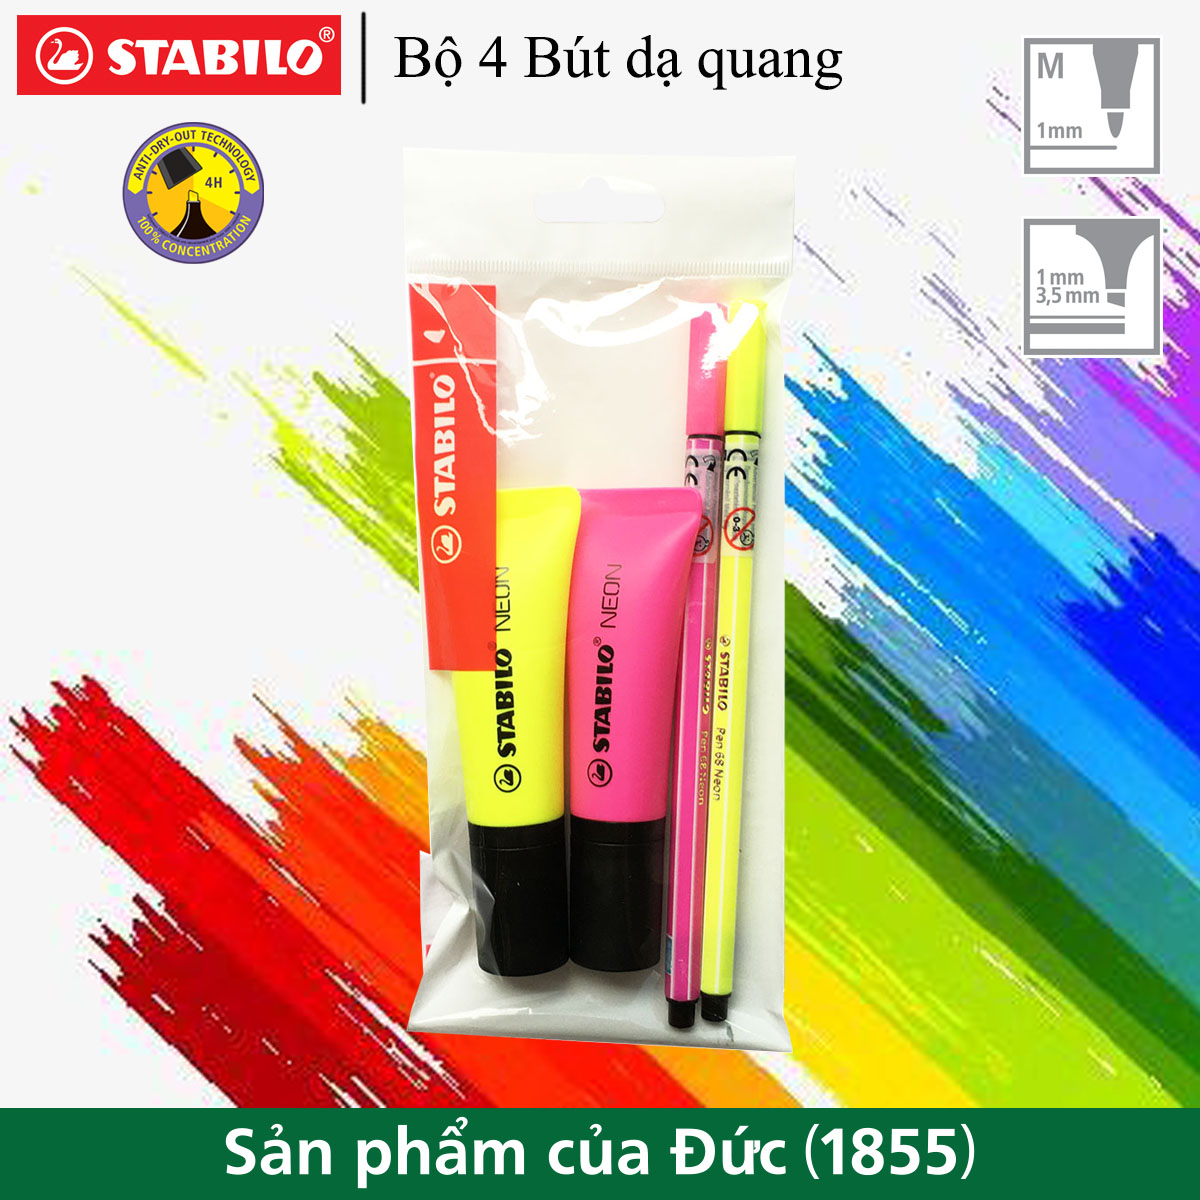 Bộ 4 Bút dạ quang STABILO màu Neon HL72/PN68-C2